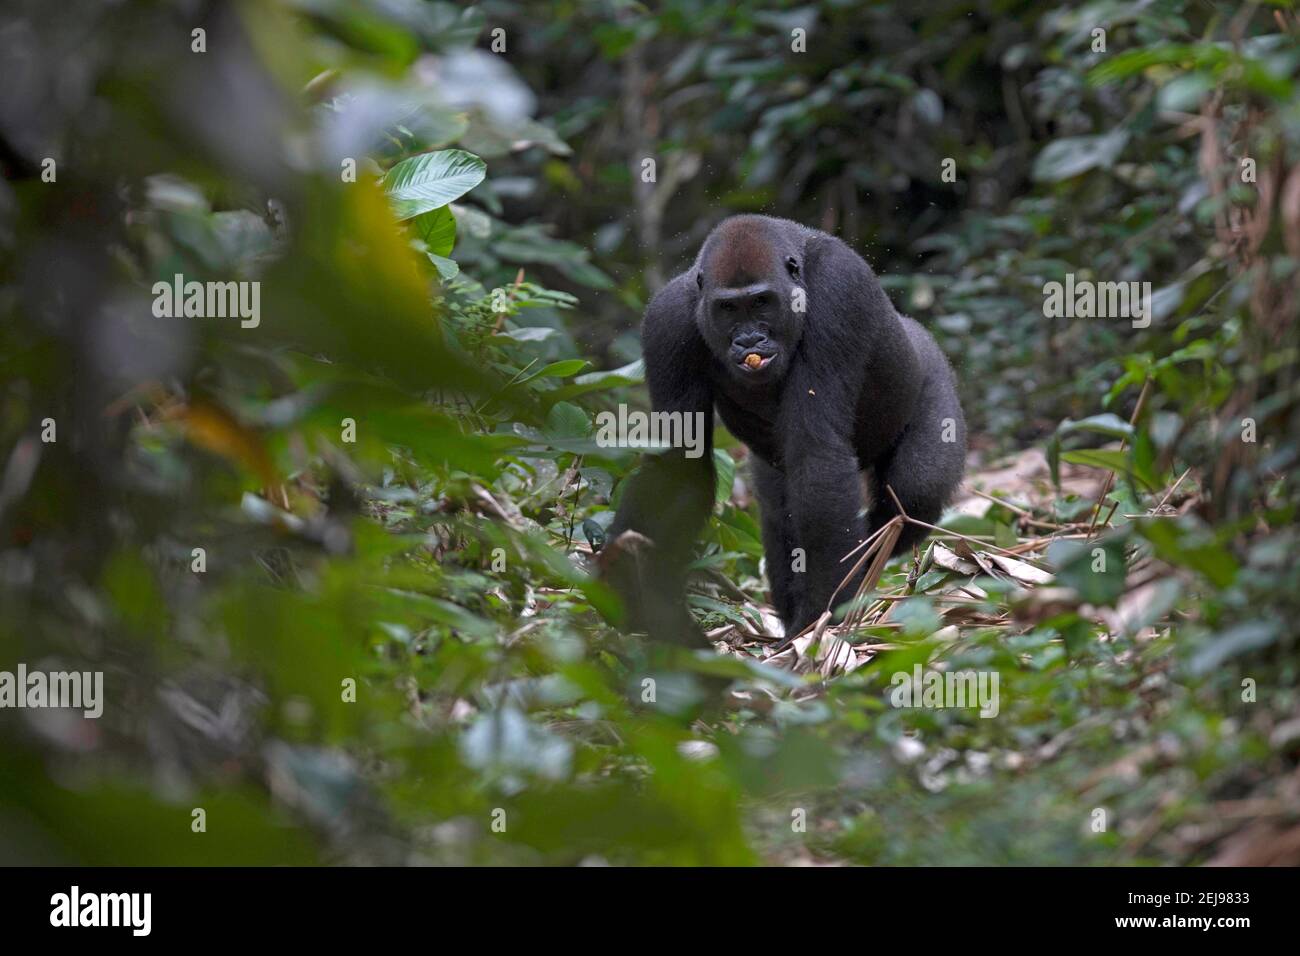 Gorila de las tierras bajas occidentales Foto de stock